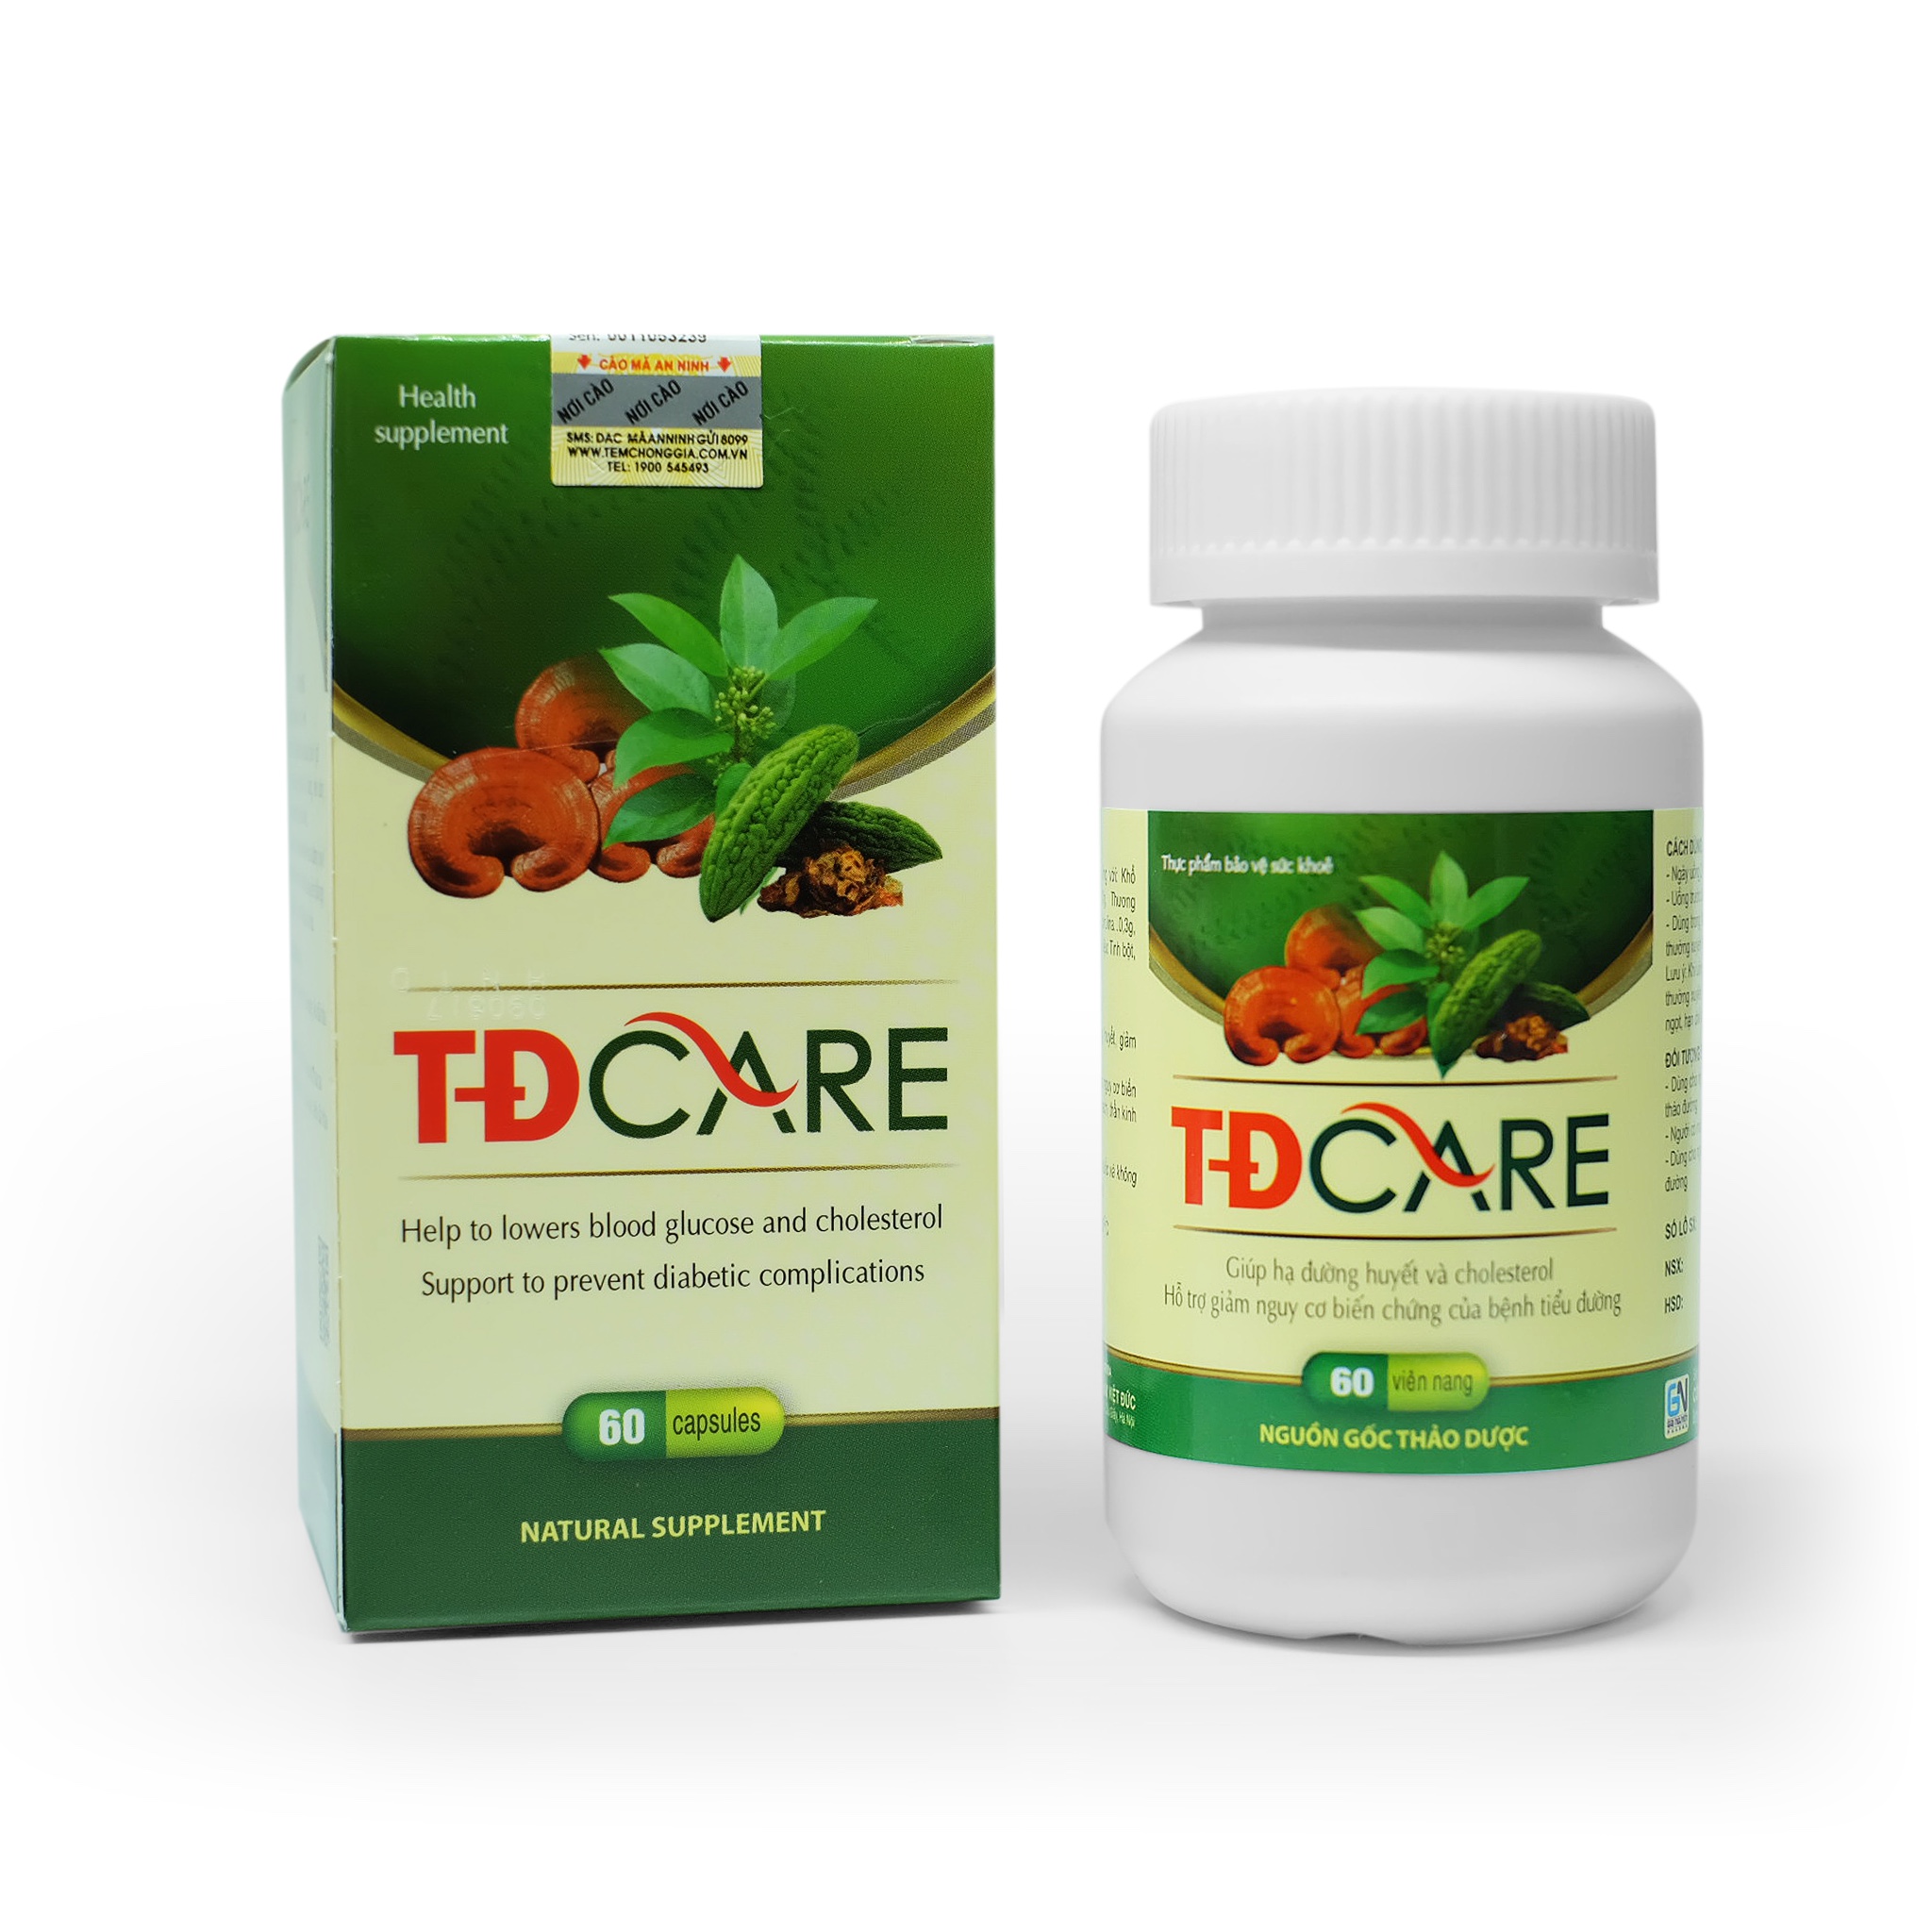 TDCare là thực phẩm chức năng bảo vệ sức khỏe, được điều chế từ các thành phần tự nhiên. Sản phẩm này phù hợp với đa dạng đối tượng: người có nguy cơ cao mắc tiểu đường, người tiền tiểu đường và người đang mắc bệnh tiểu đường.